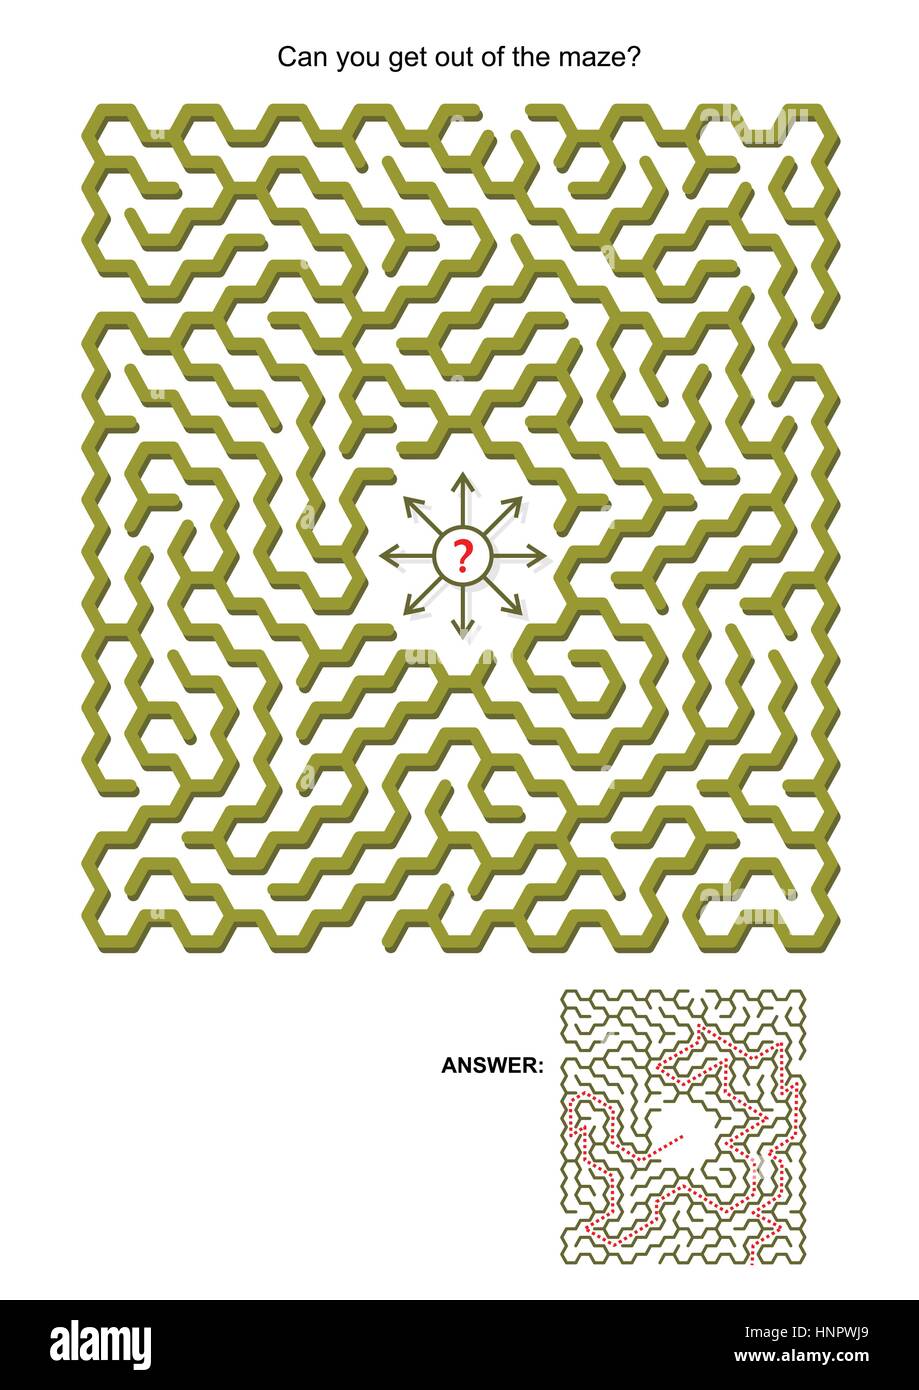 Gioco labirinto per bambini o adulti: potete uscire dal labirinto? Le risposte sono inclusi. Illustrazione Vettoriale